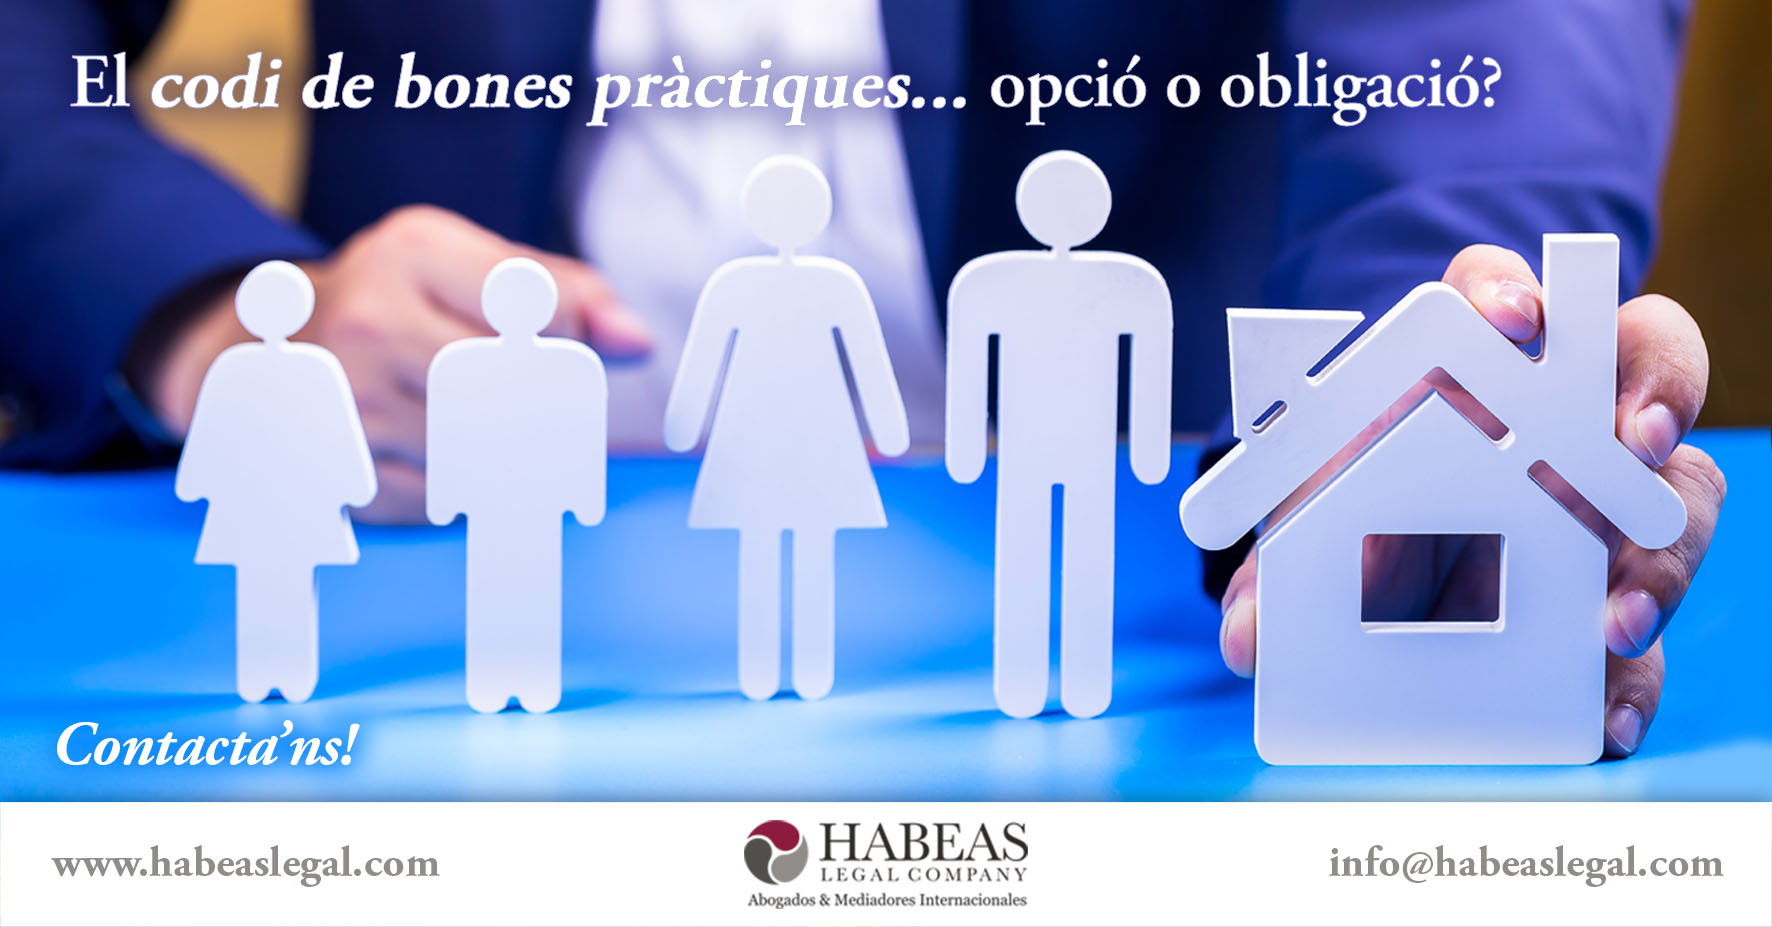 Codi bones practiques Habeas Legal - Blog